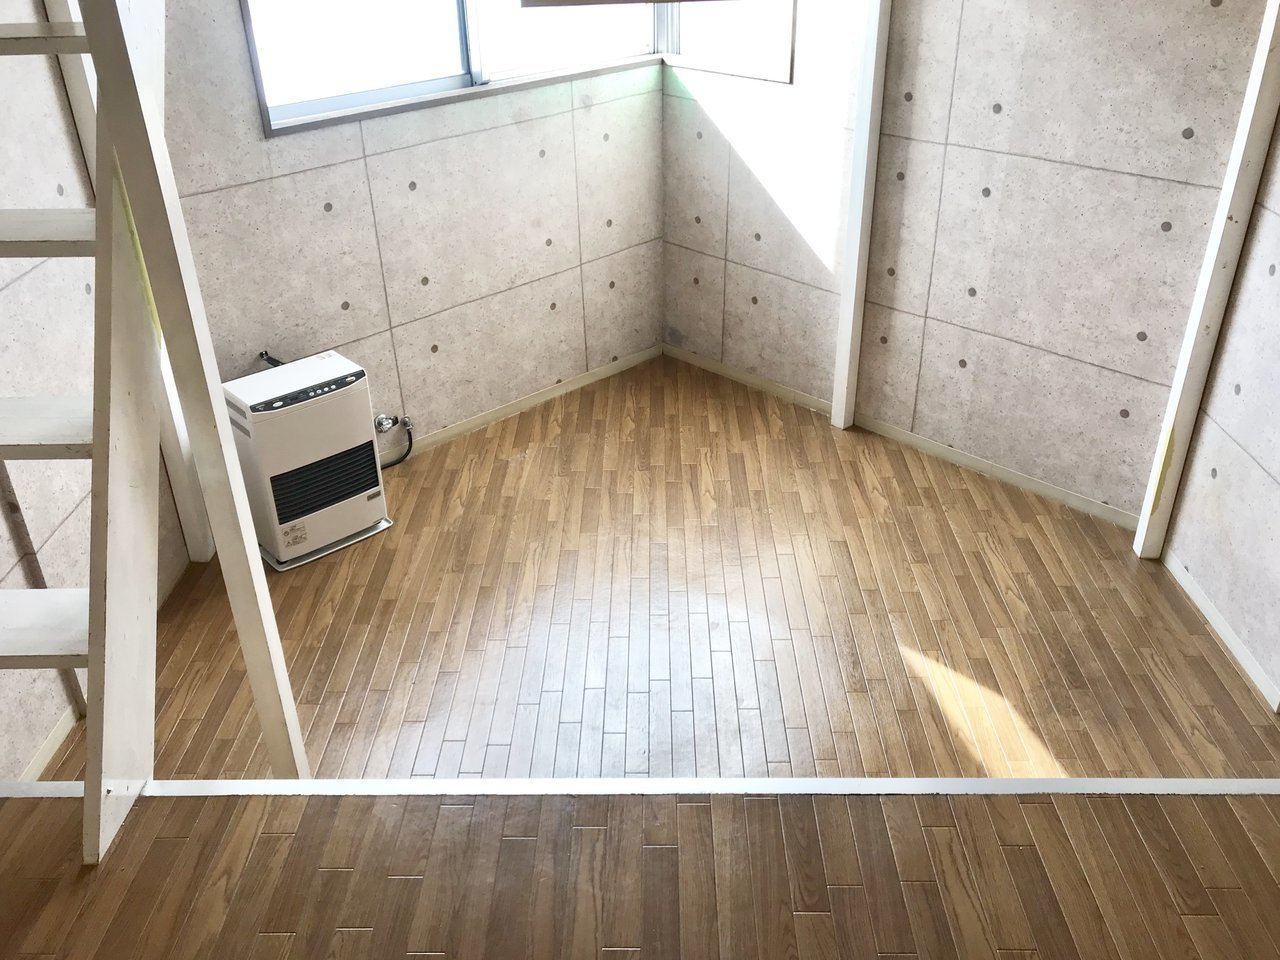 壁紙はコンクリートをデザインしたもの。床はクッションフロアになっていて、柔らかく過ごしやすいですよ。